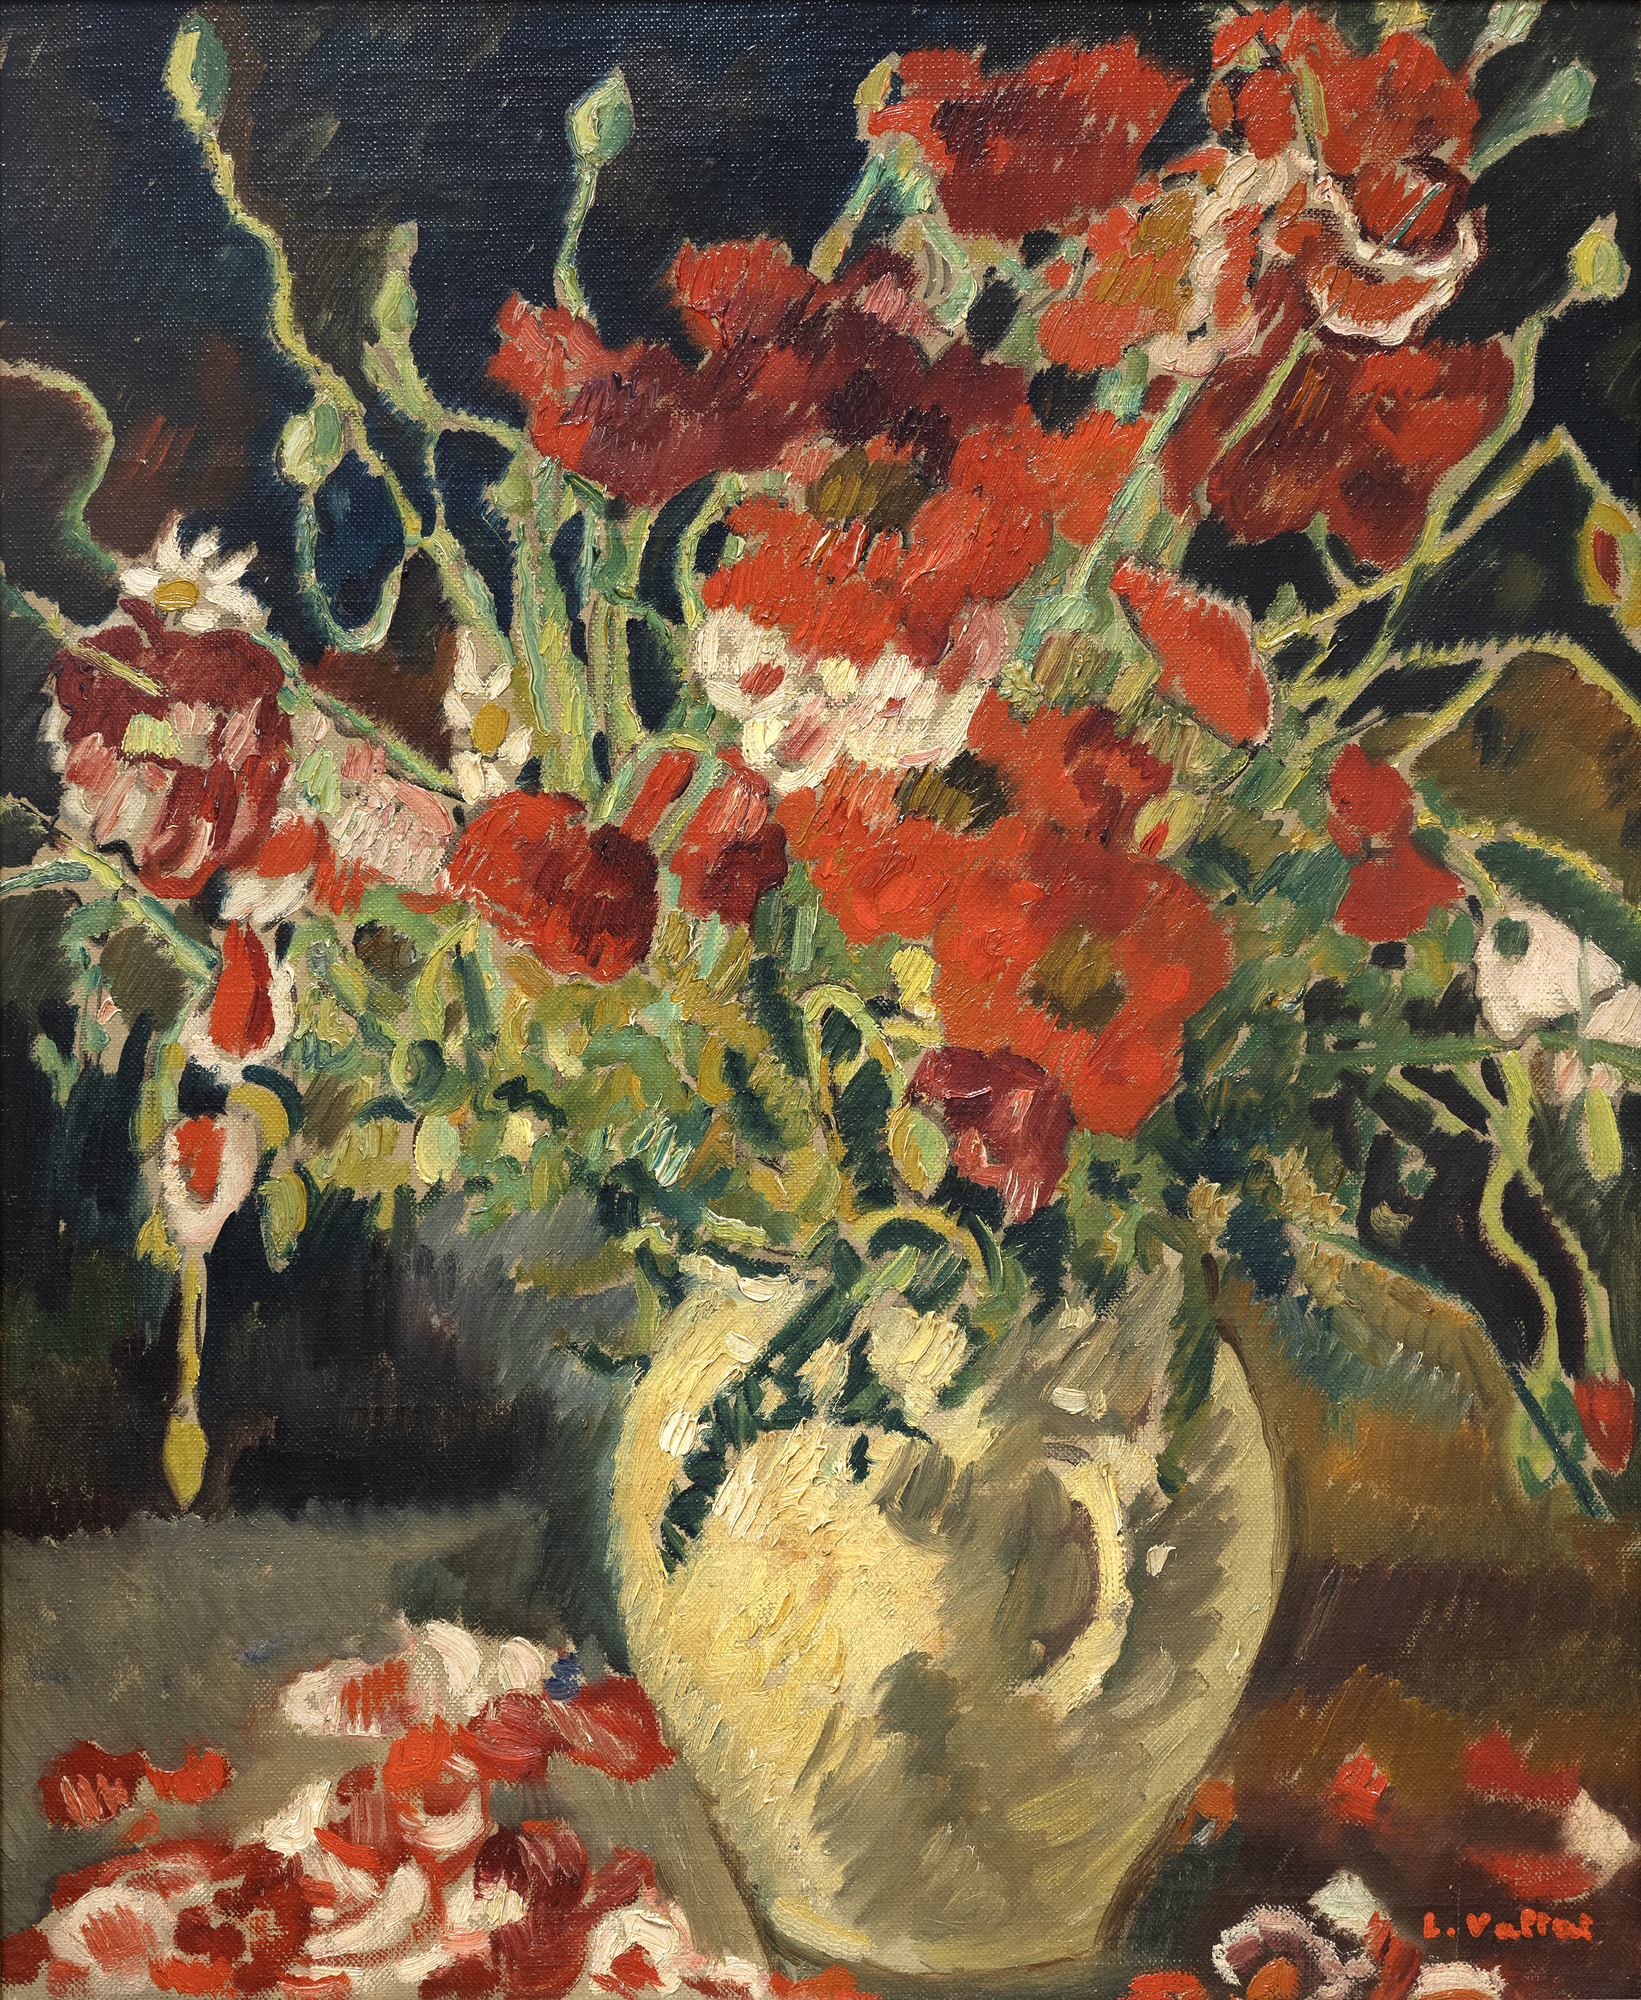 LOUIS VALTAT - Vase de coquelicots - oil on canvas - 23 1/2 x 19 in.